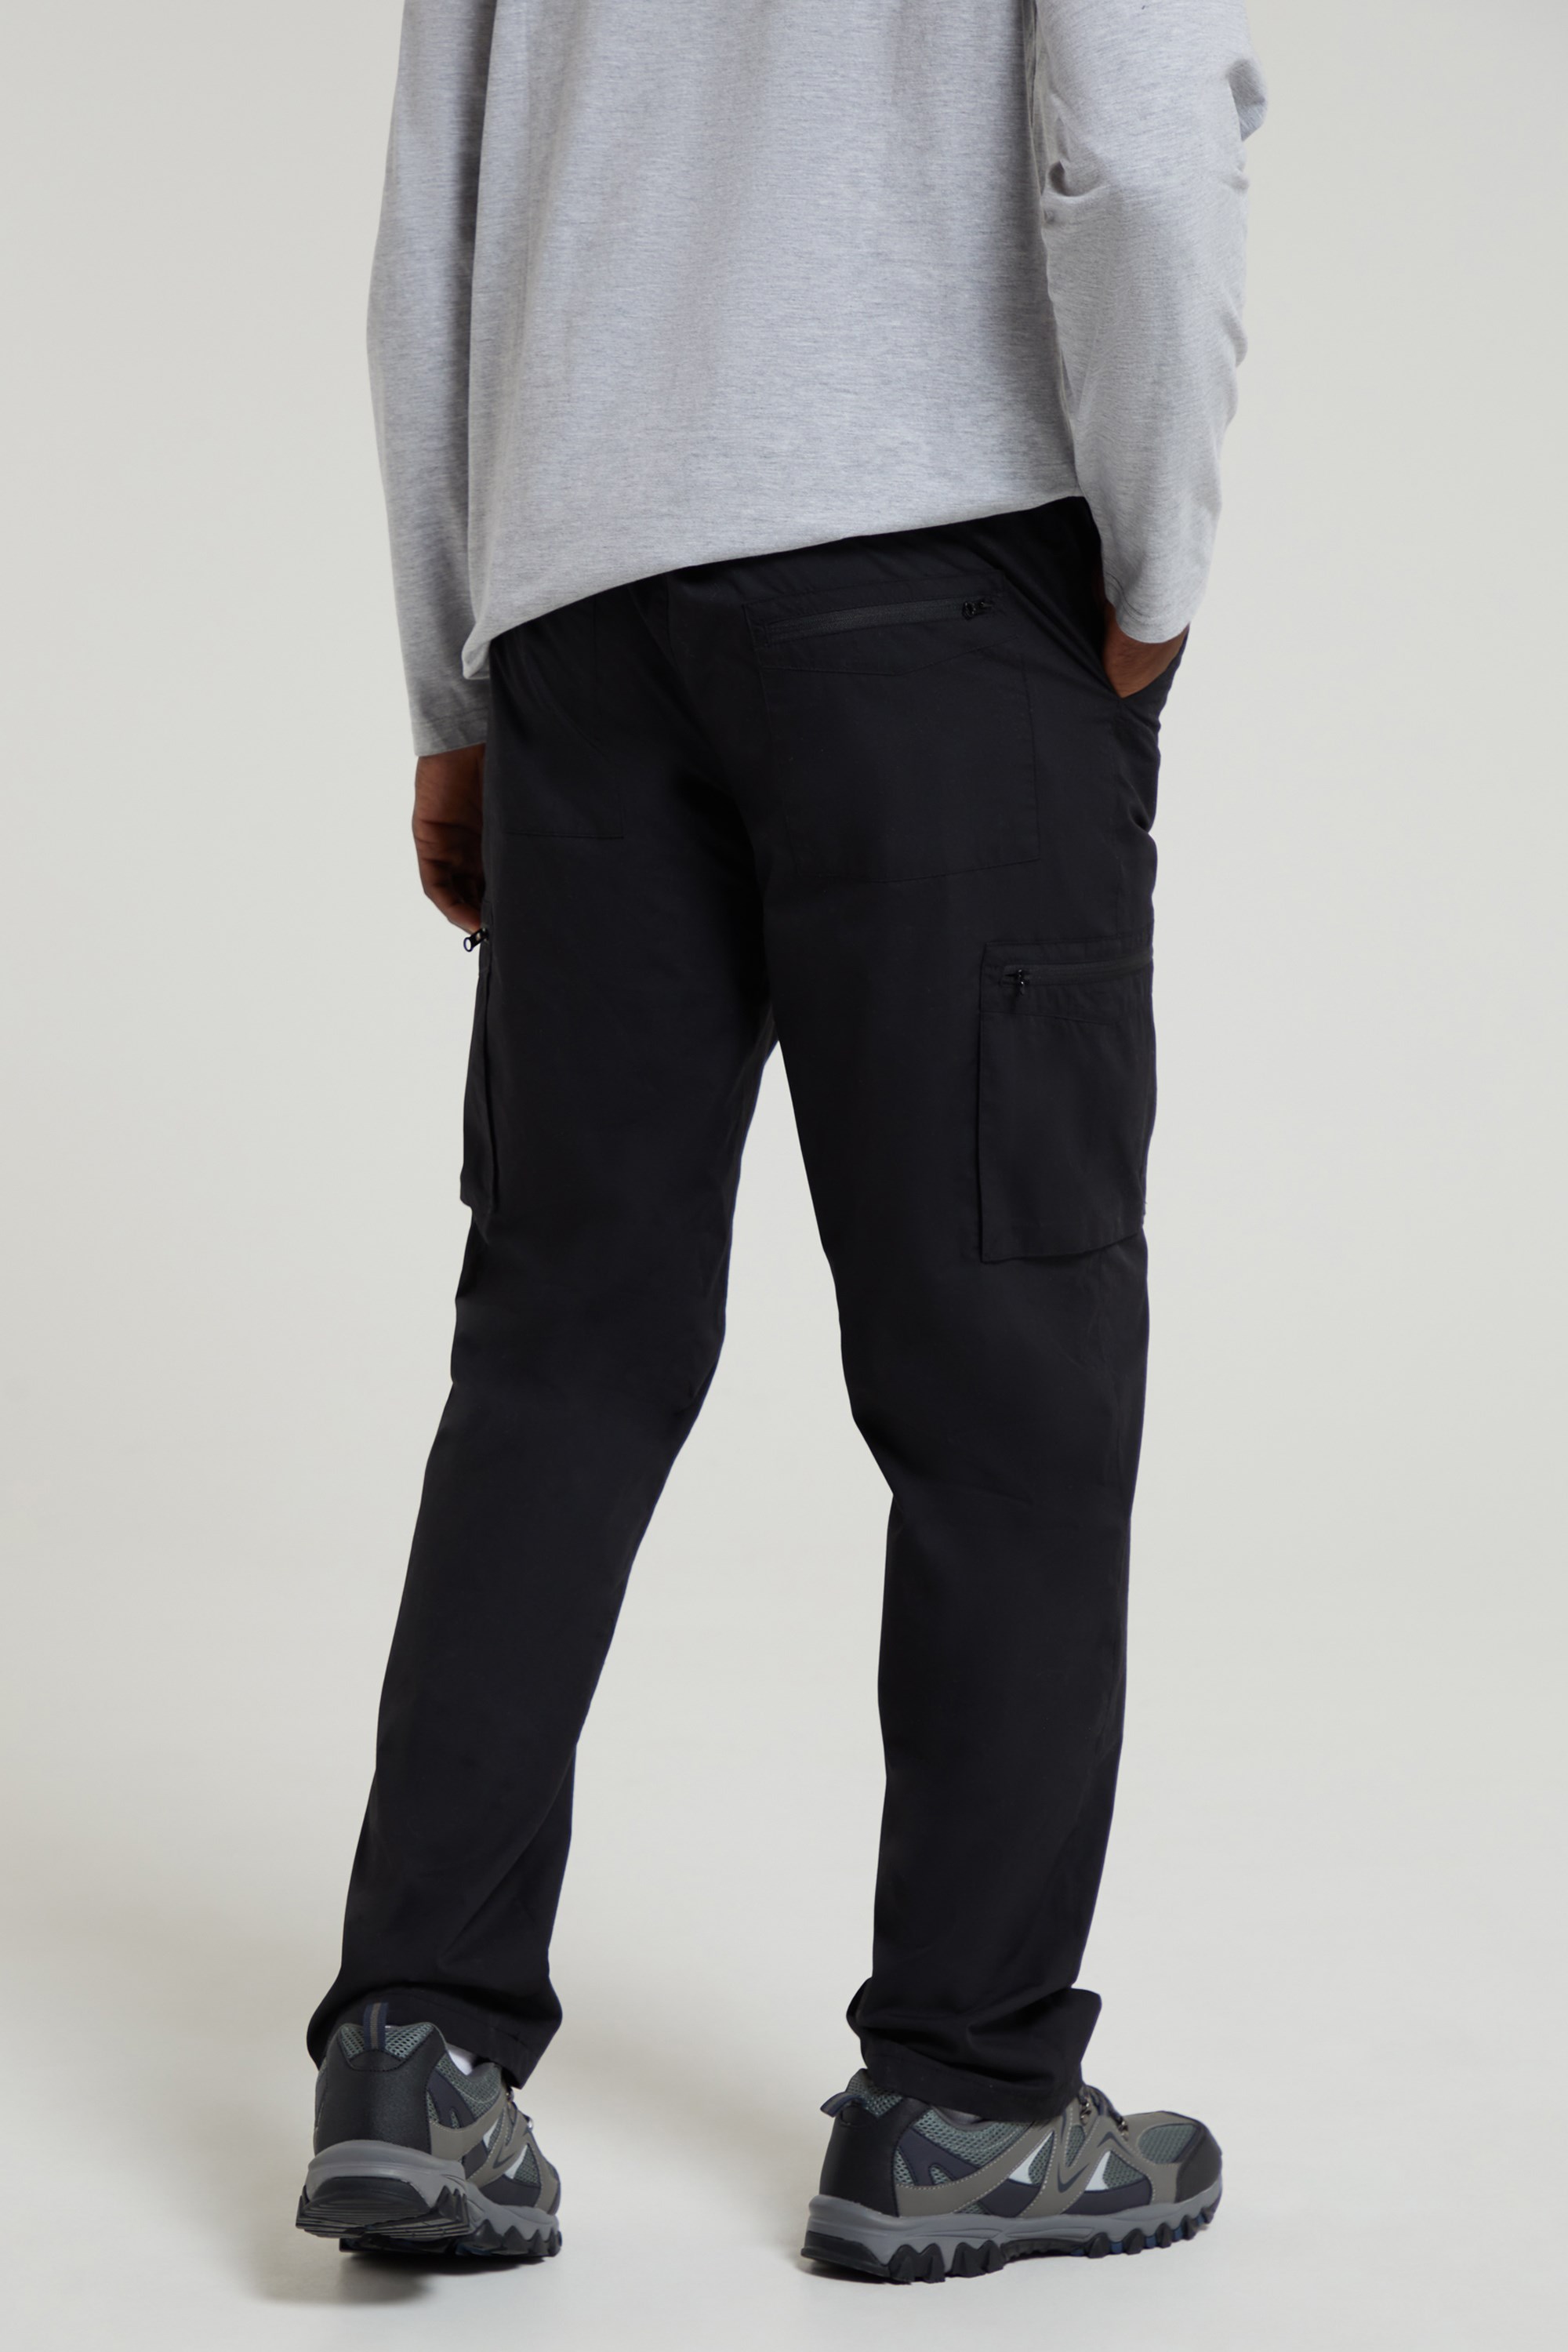 Men's Winter Pants Fleece Lined Ski Snow Pants Water Resistant with 4 Zip  Pockets